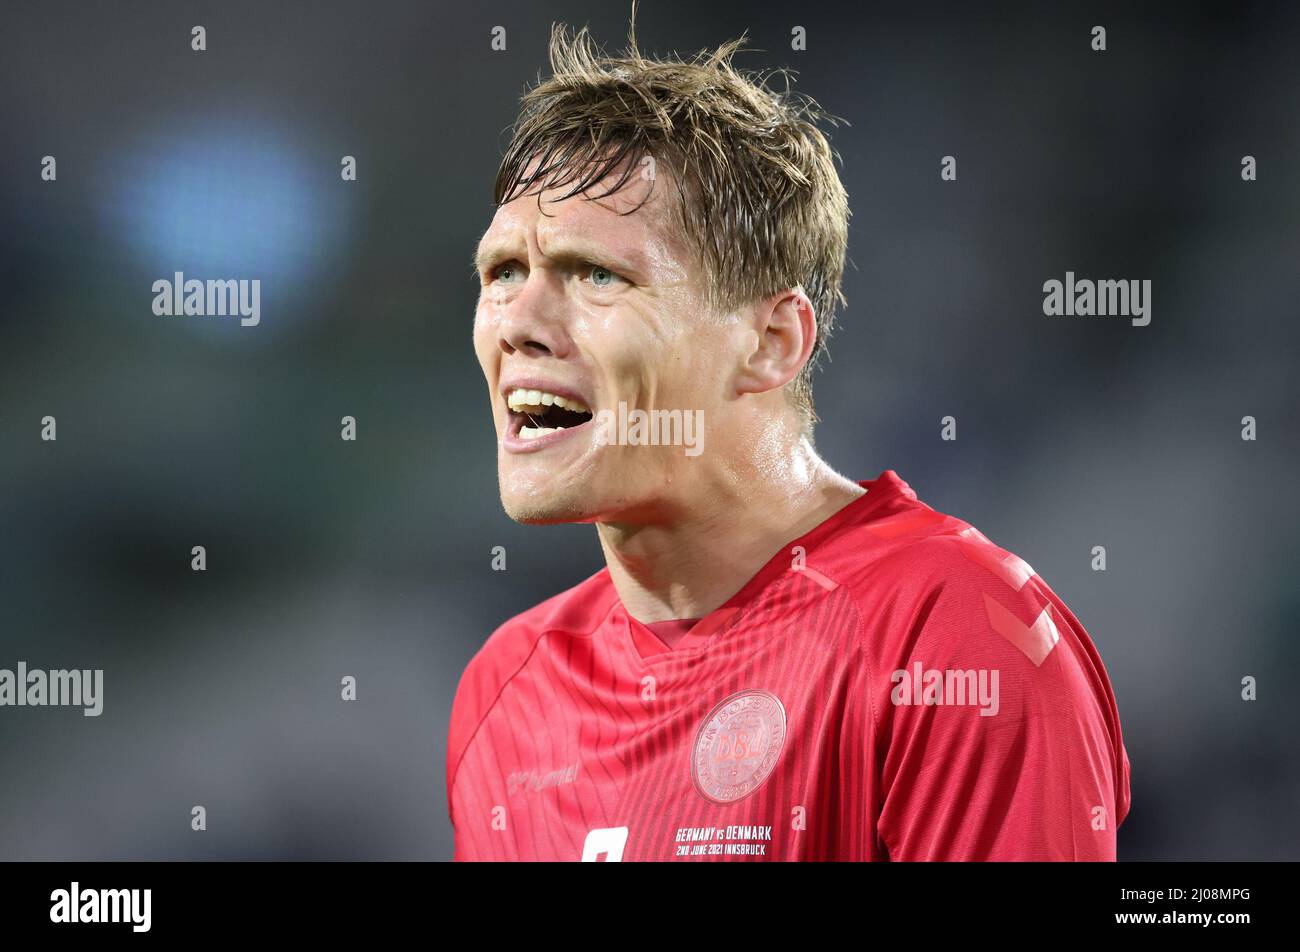 Jannik Vestergaard  Fussball LŠnderspiel Deutschland - DŠnemark 1:1  © diebilderwelt / Alamy Stock Stock Photo